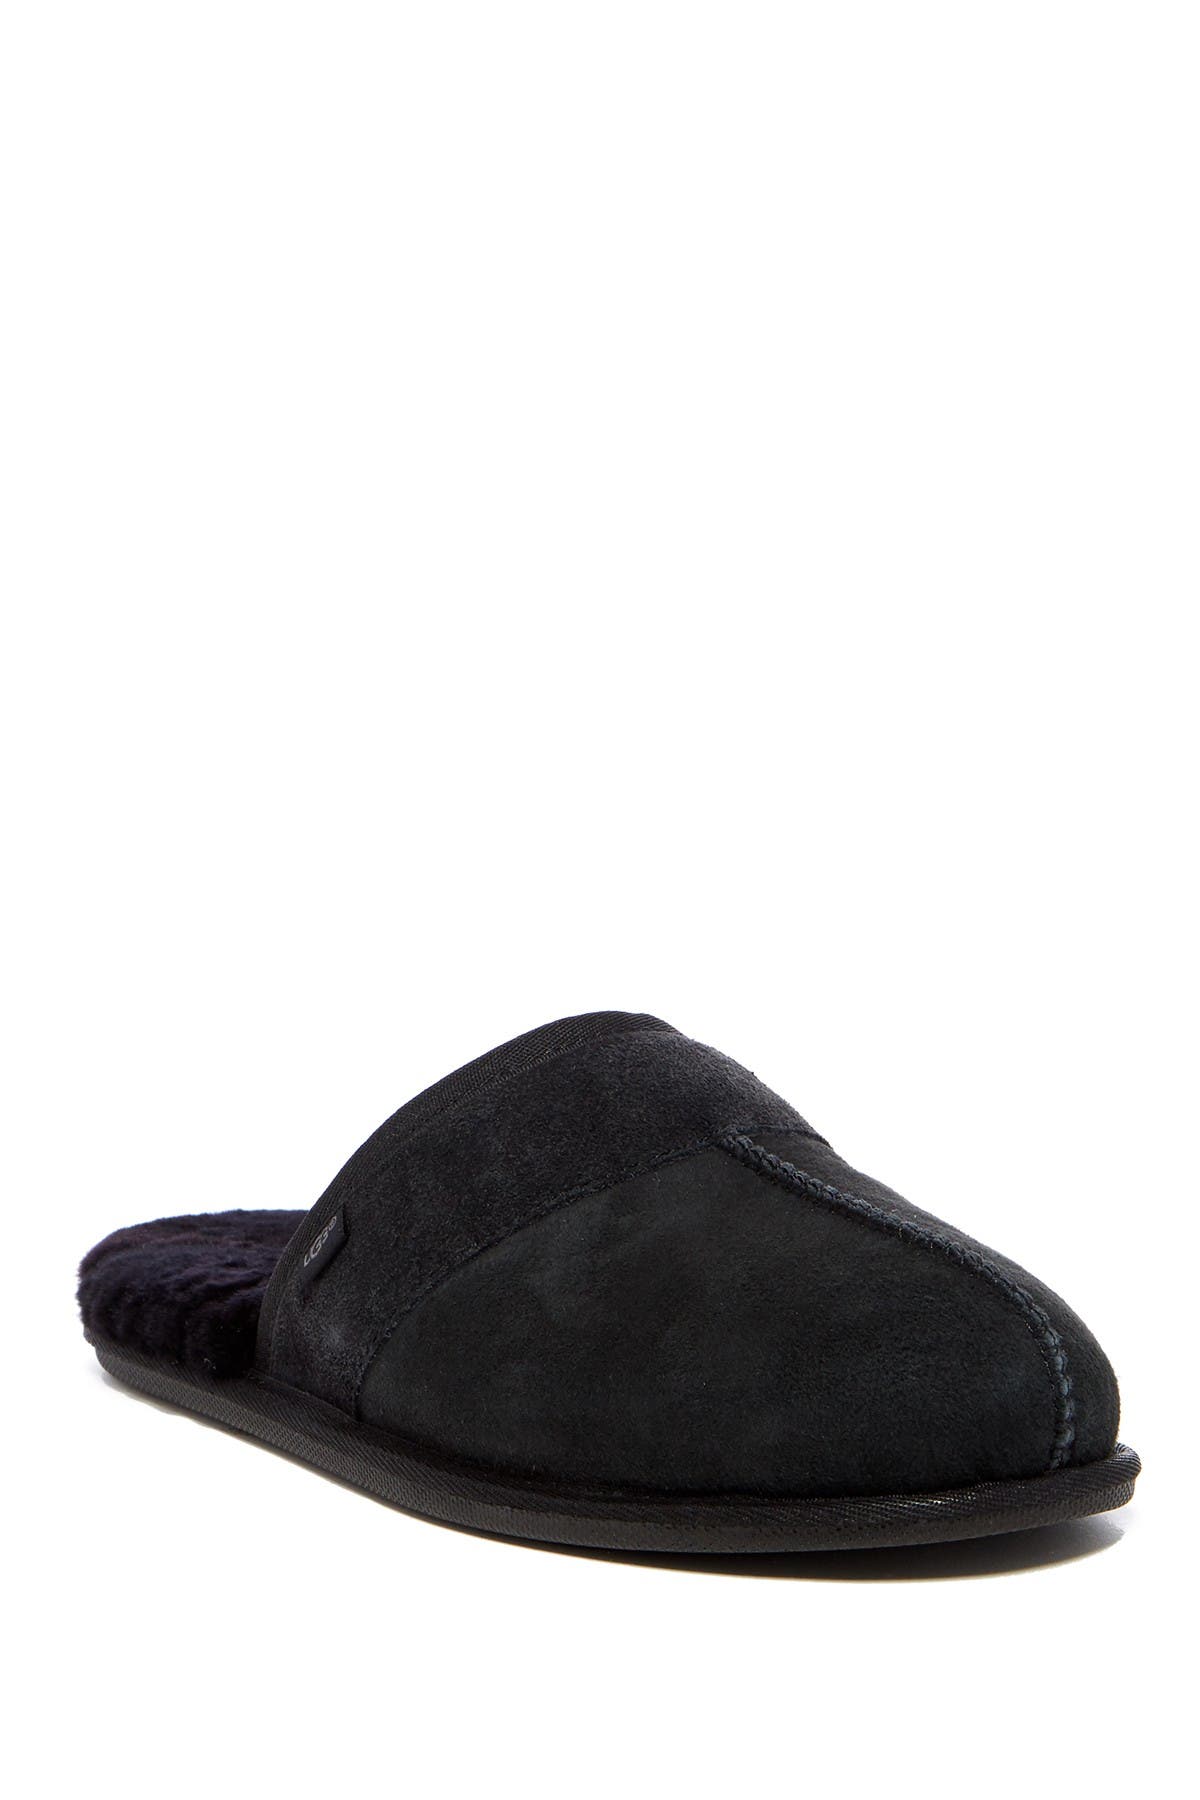 ugg black slippers mens